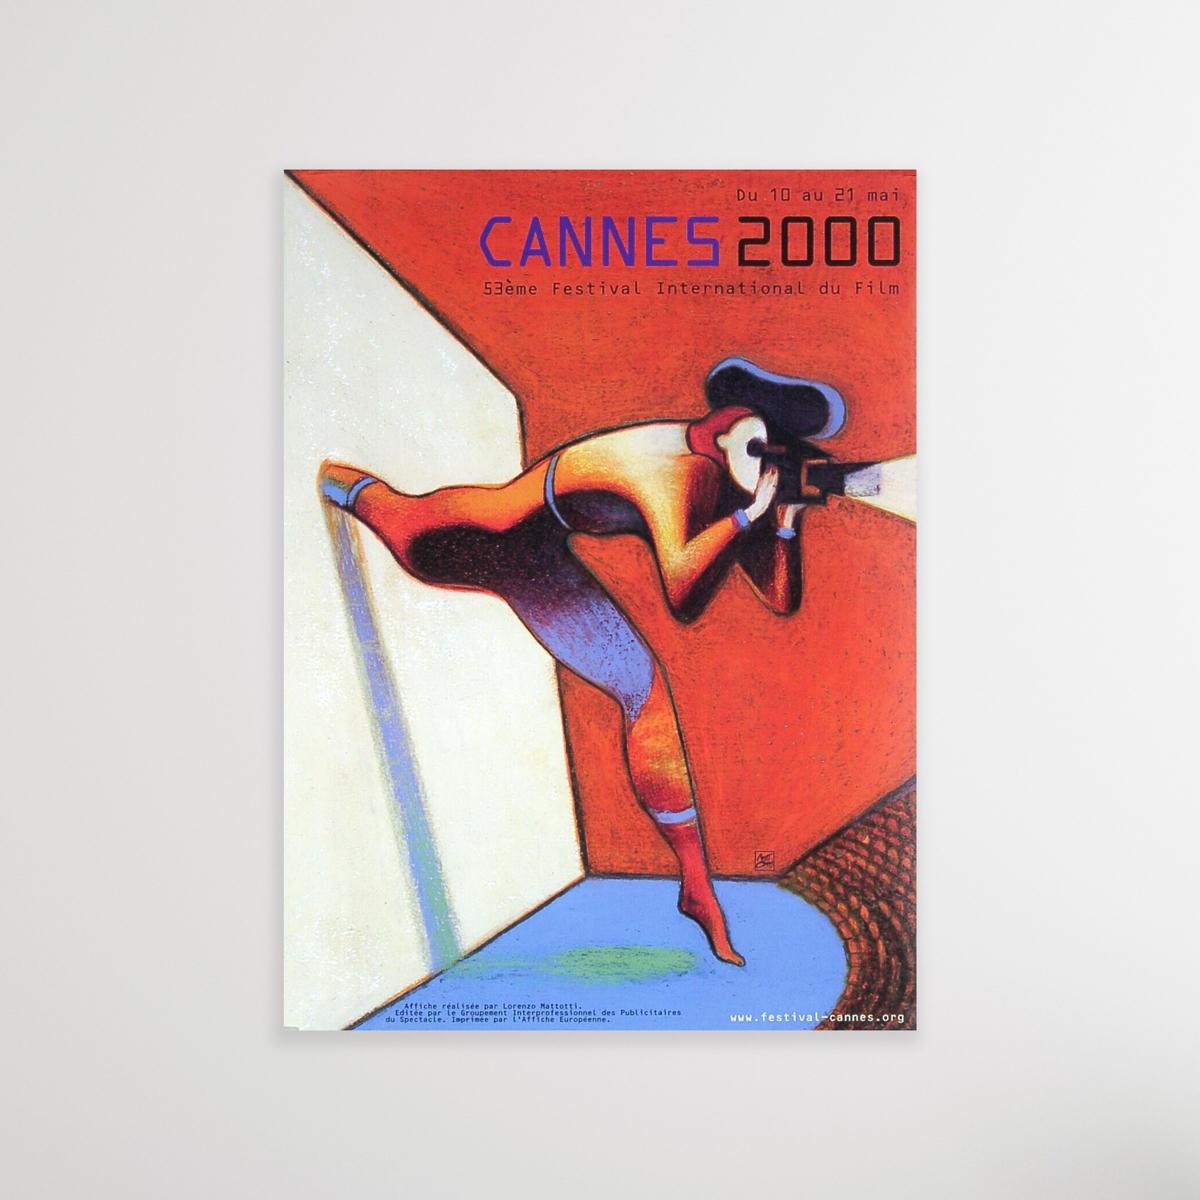 Offizielles Werbeplakat für das 53. jährliche Filmfestival von Cannes (2000).

Größe 33 x 23 Zoll. Wird ungerahmt verkauft. Die Schiffe sind gerollt.

Das Filmfestival von Cannes (le Festival de Cannes), gegründet 1946,
ist neben Venedig und Berlin